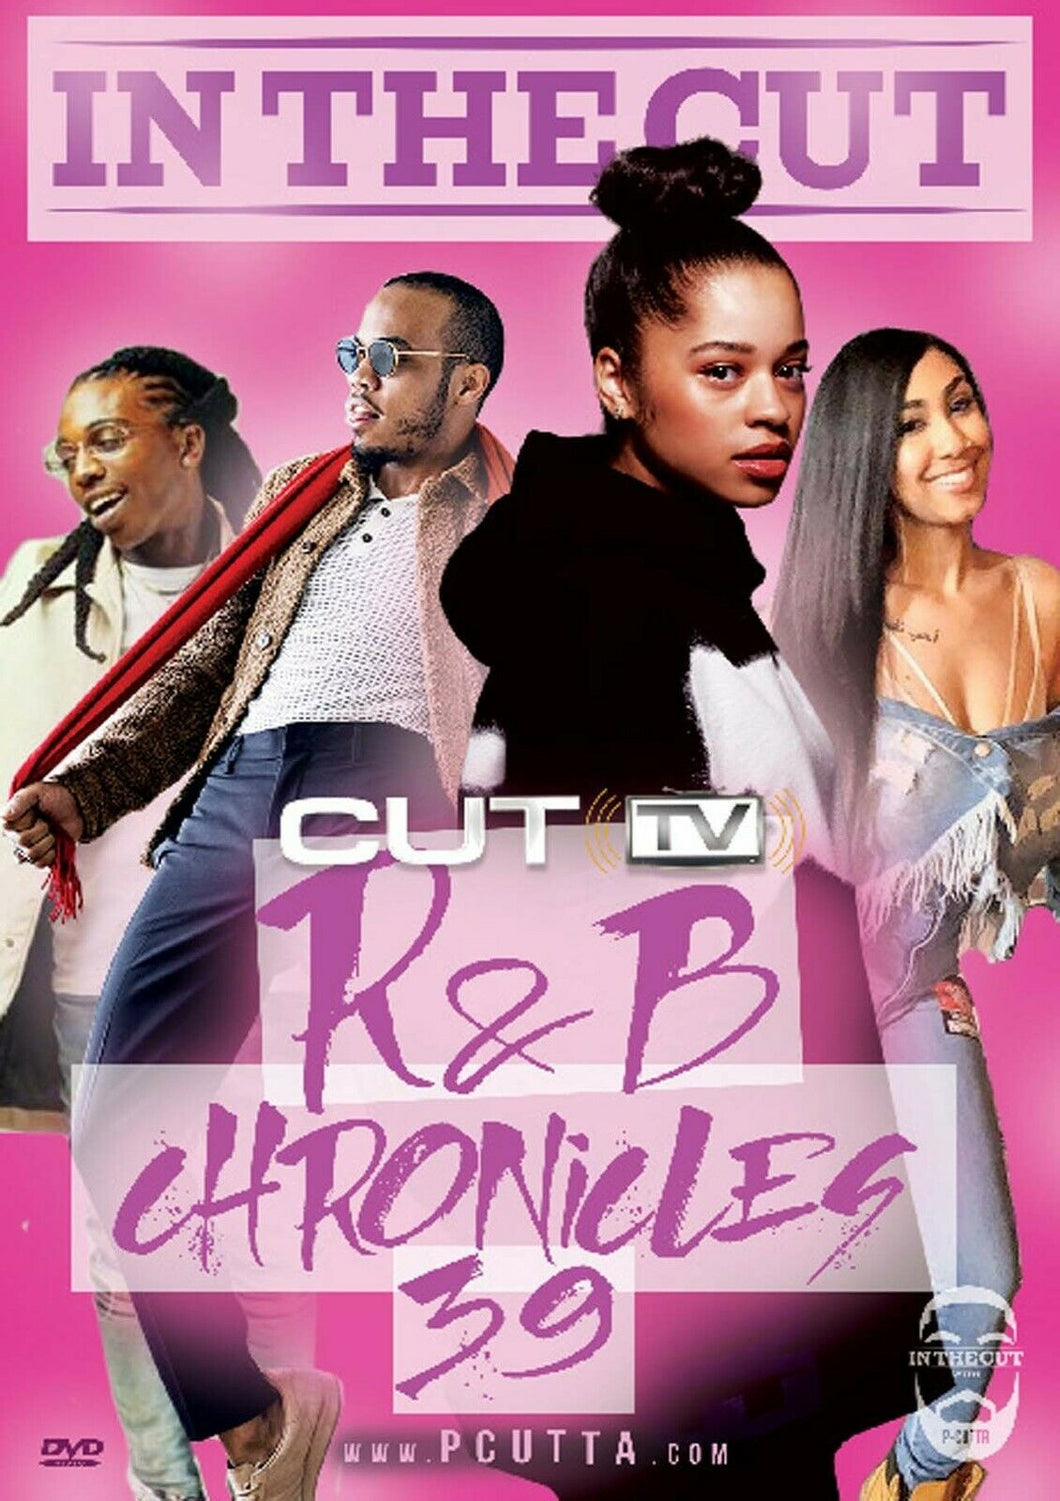 CUT TV - R&B CHRONICLES VOL. 39 (MUSIC VIDEO DVD) Chris Brown, Ella Mai, 6lack